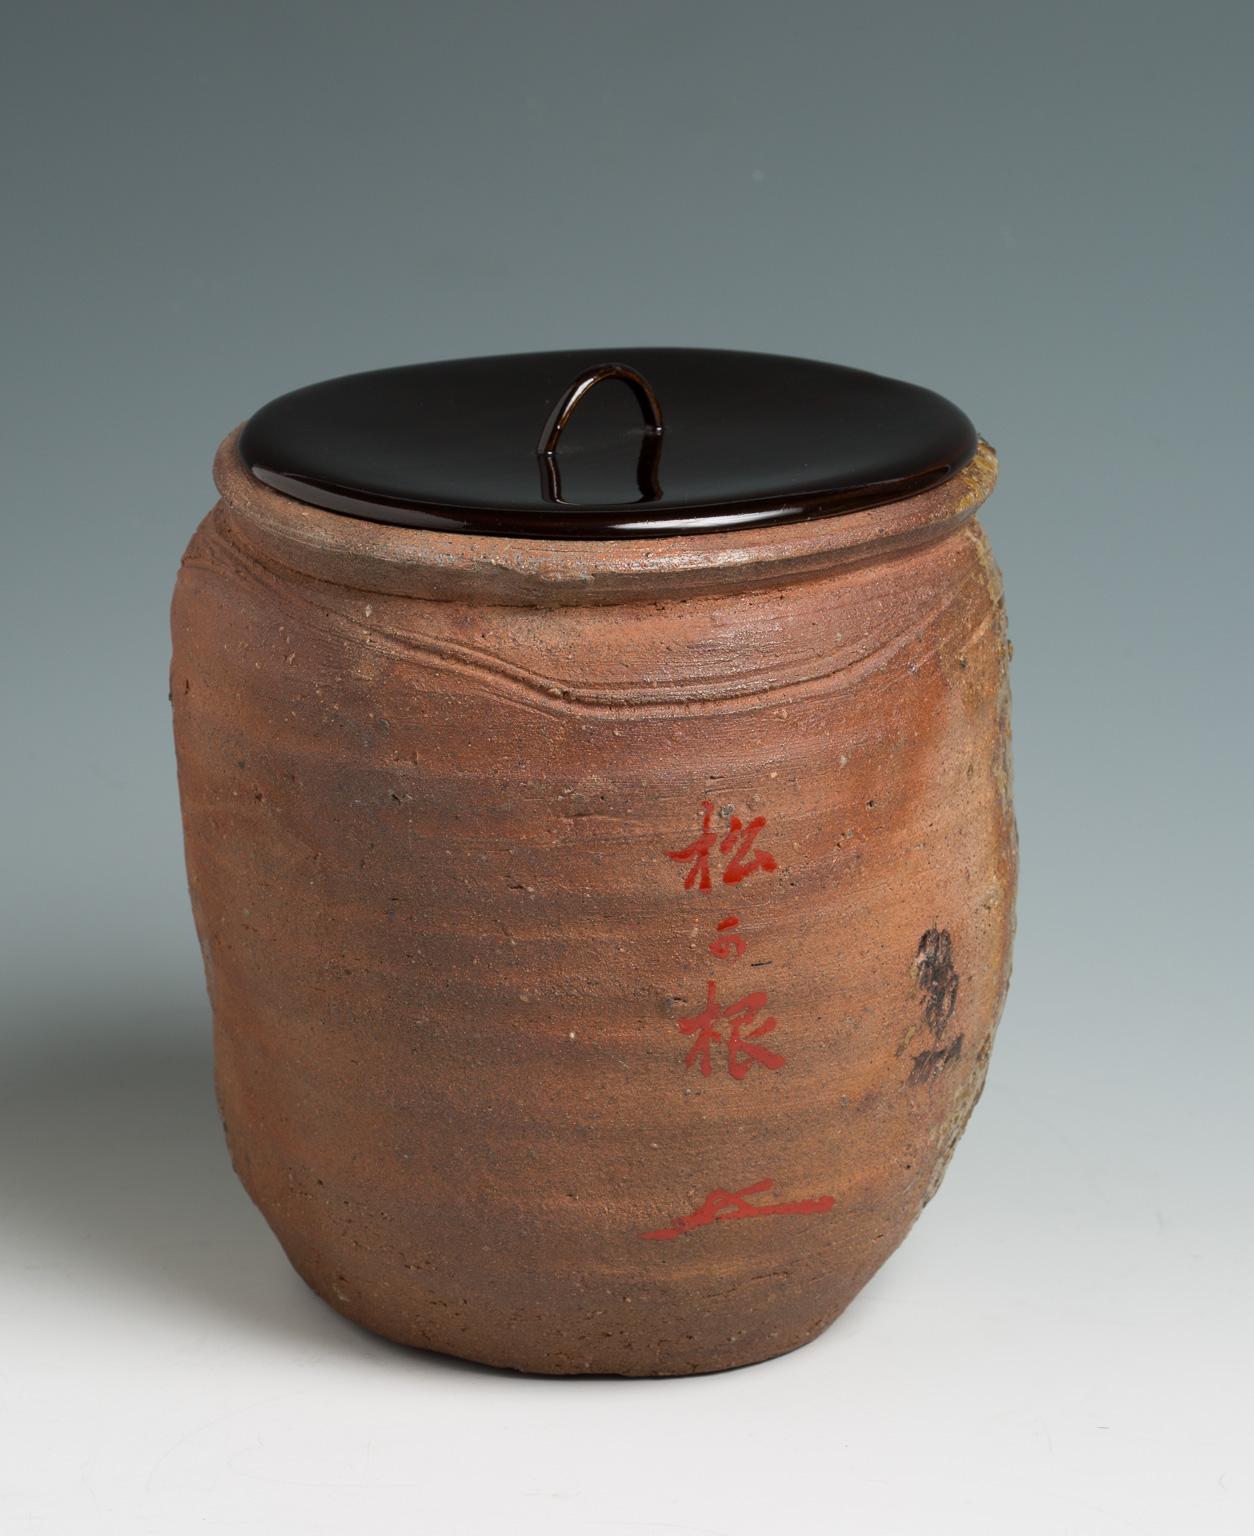 Japanese Ko-Bizen Water Jar ‘Mizusashi’ Named “Matsugane”, 16th Century 1